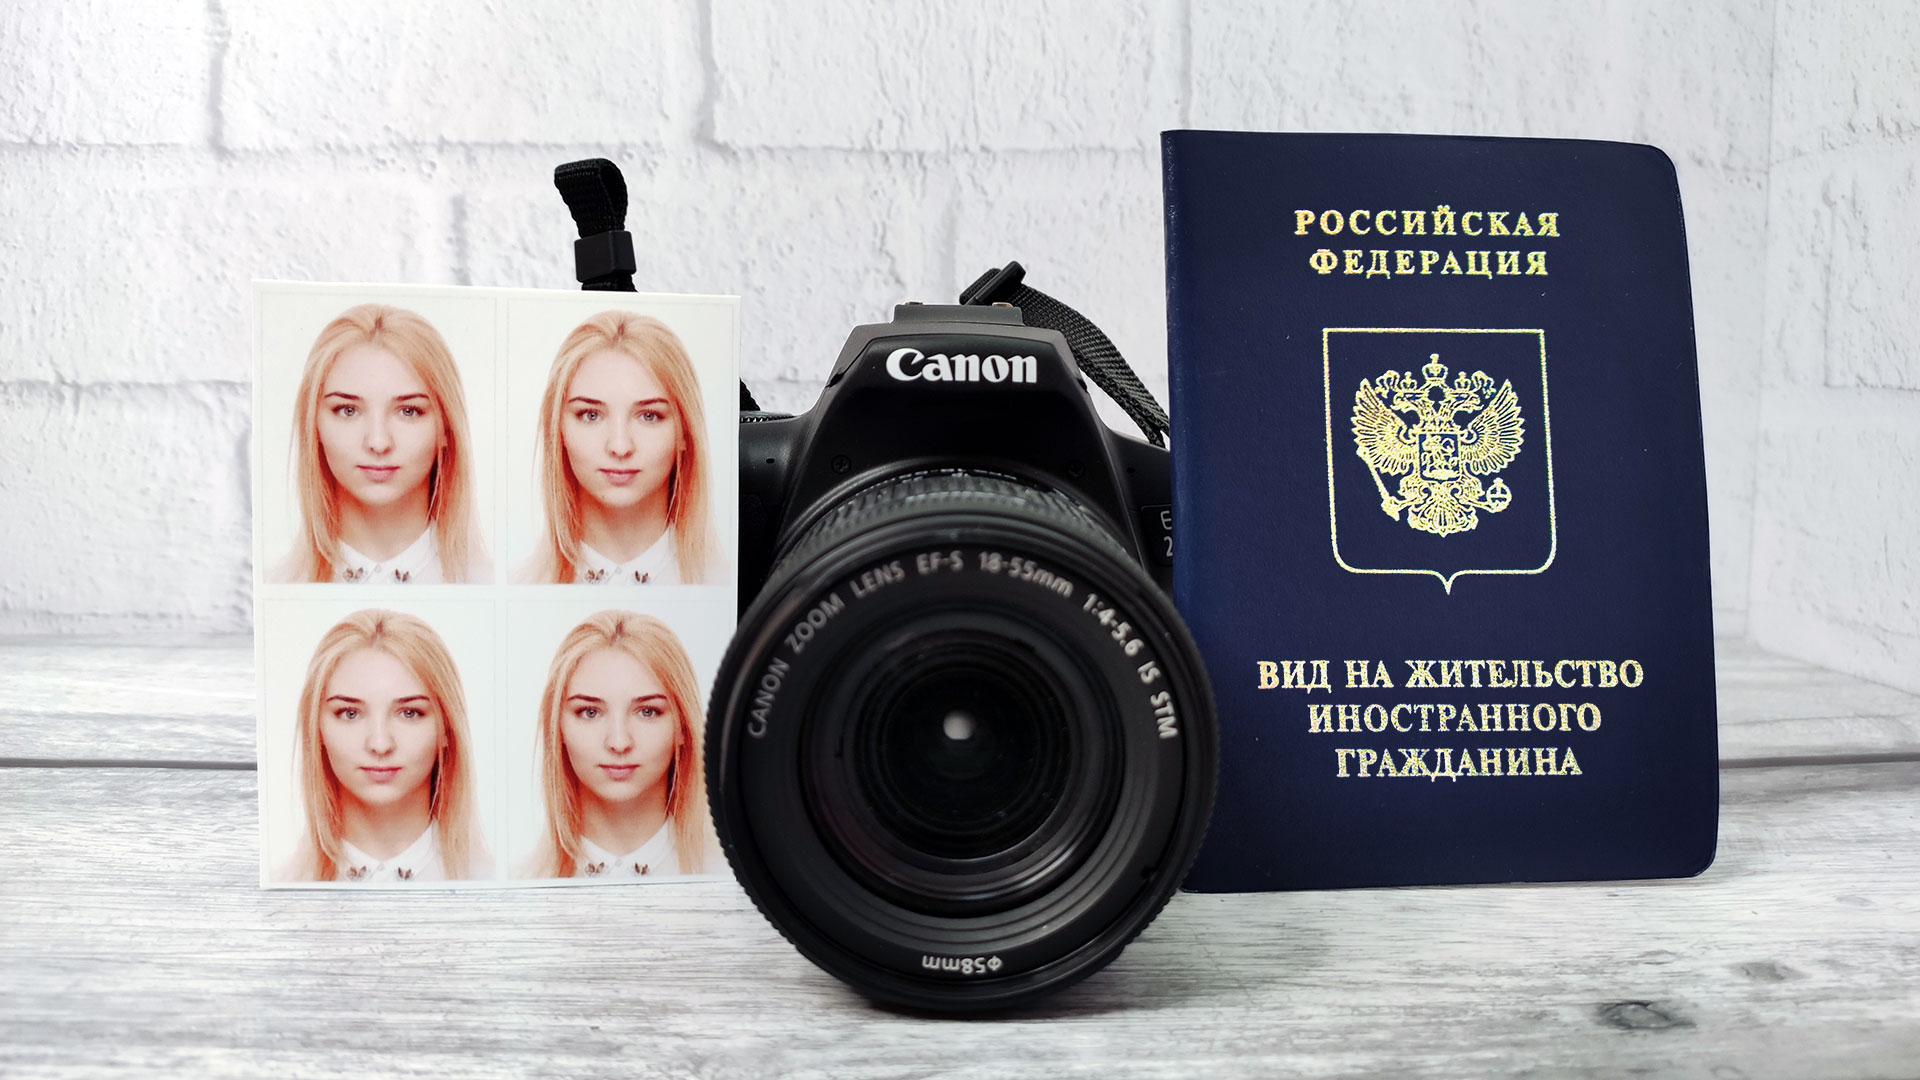 Требования на фото вид на жительство в россии